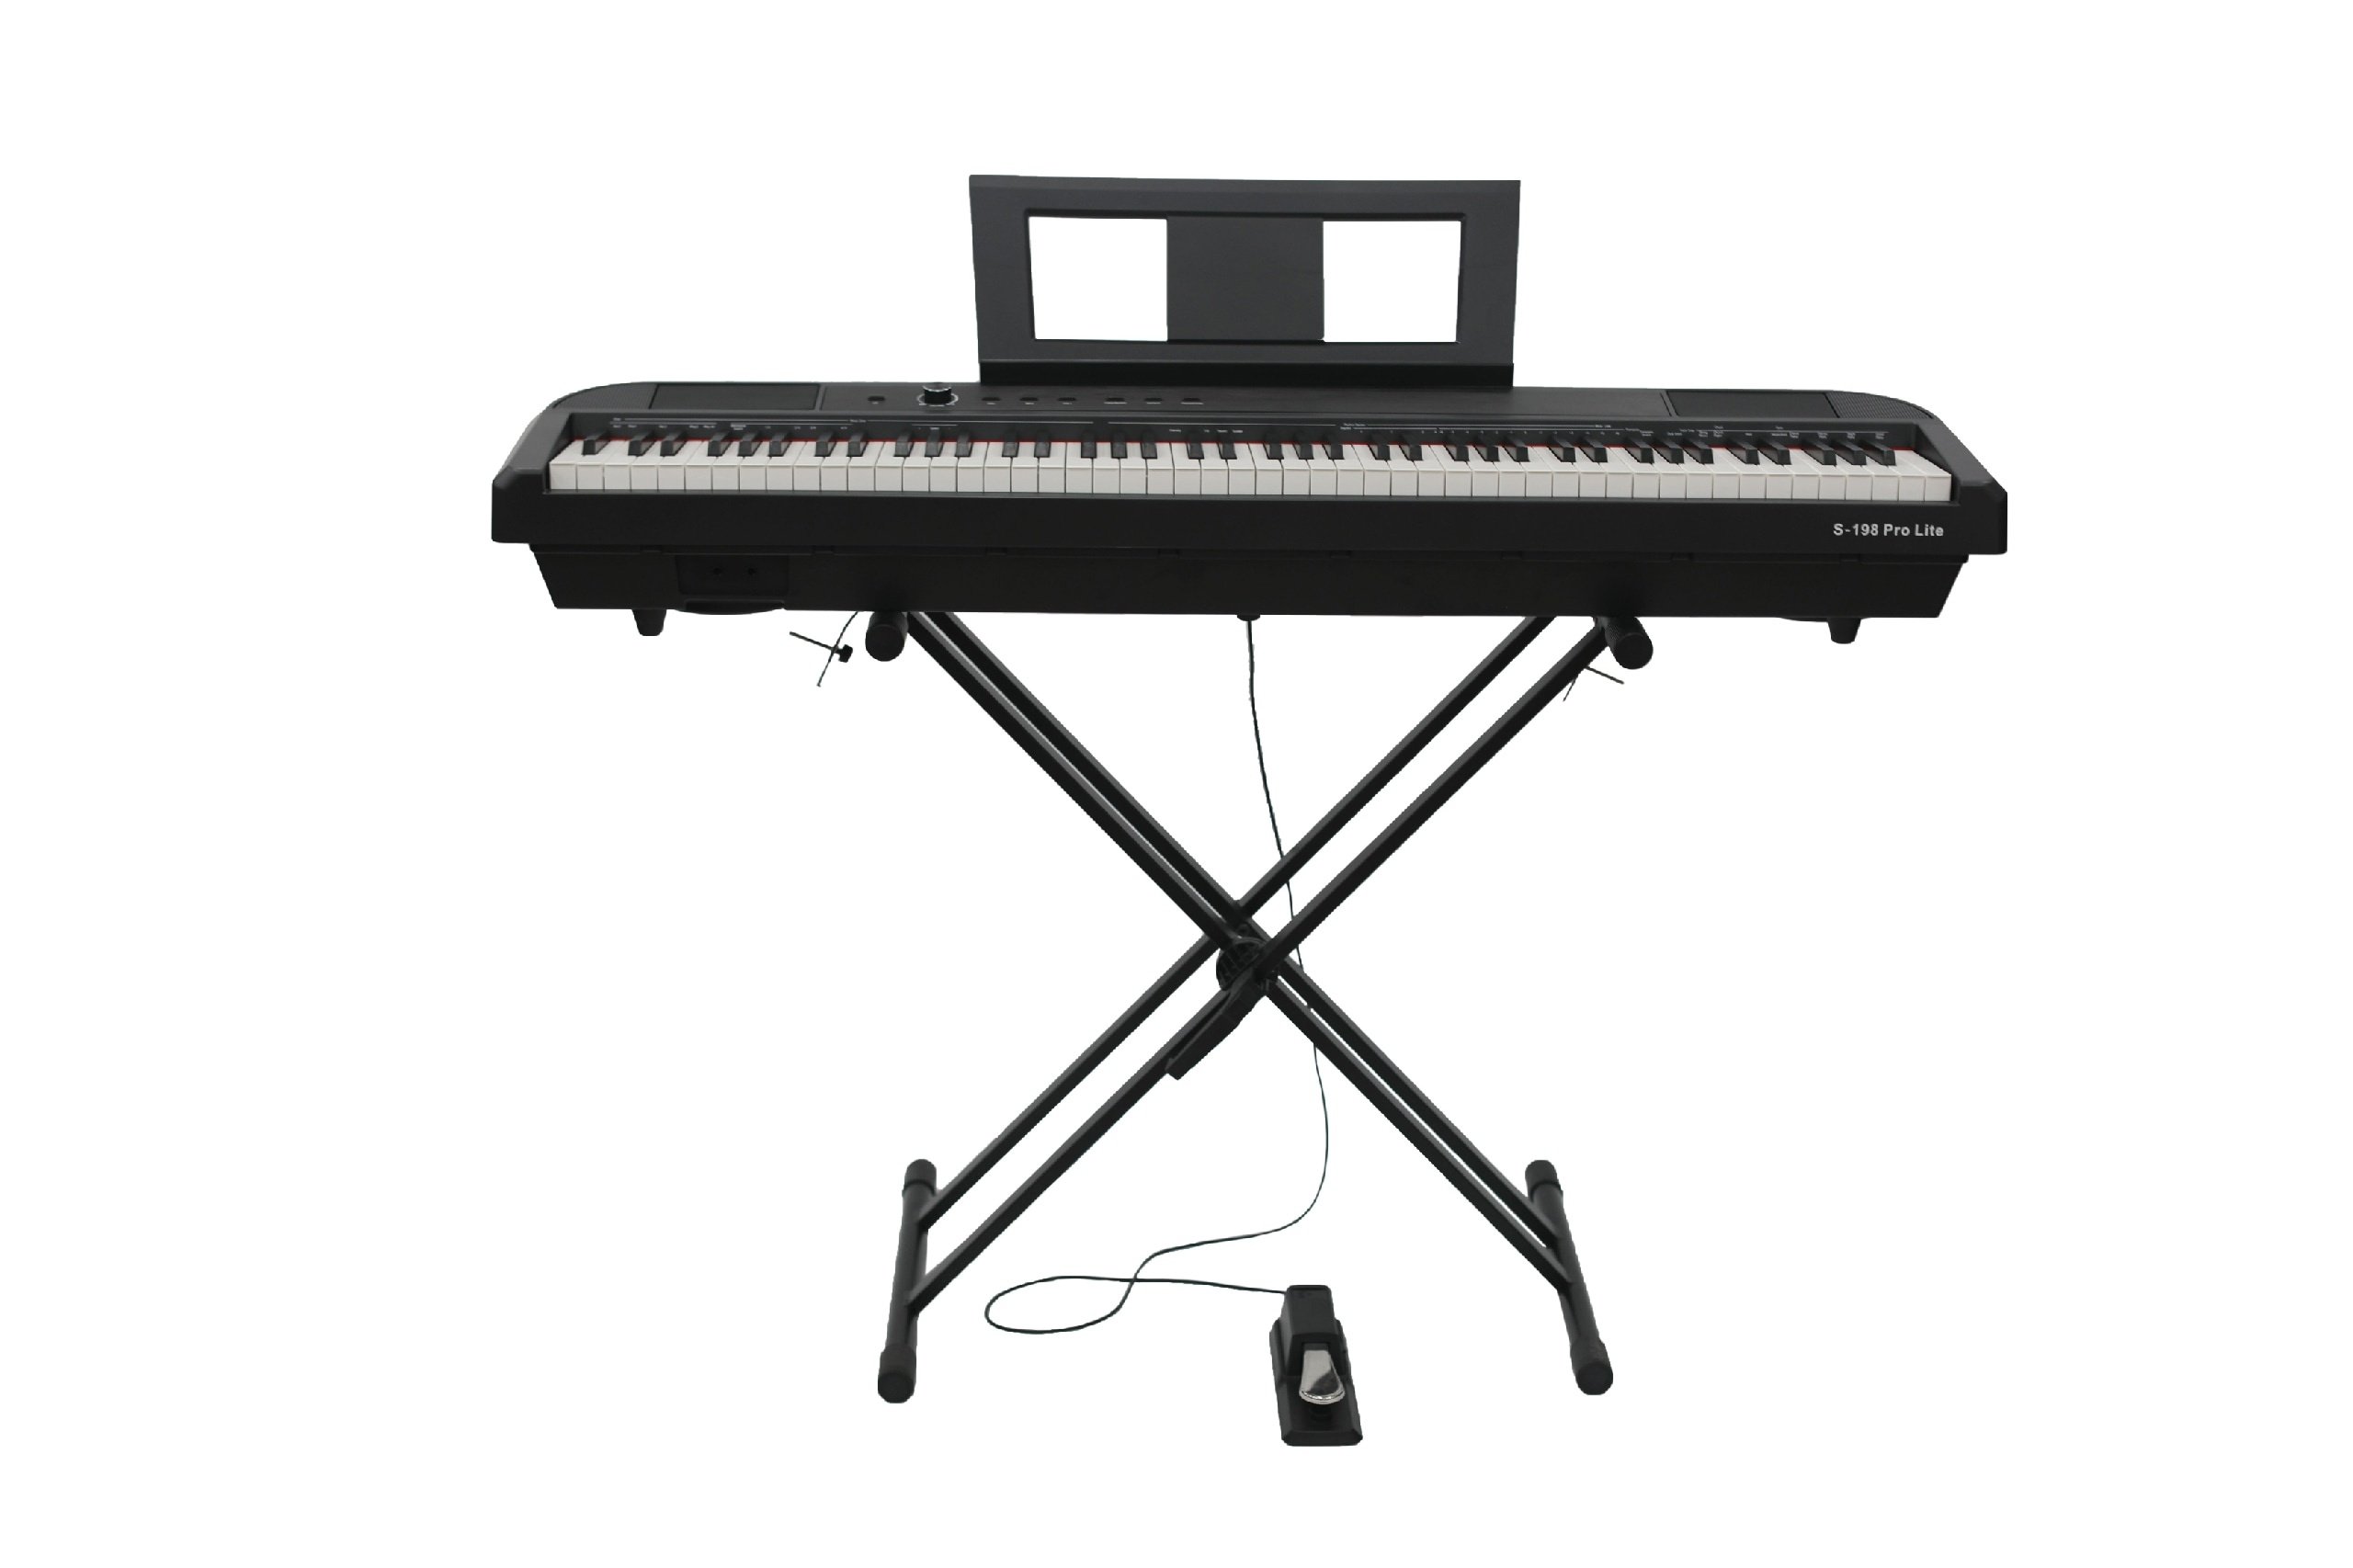 Beisite S-198 Pro Lite Цифровое пианино. Клавиатура: 88 полновзвешенных градуированных клавиш